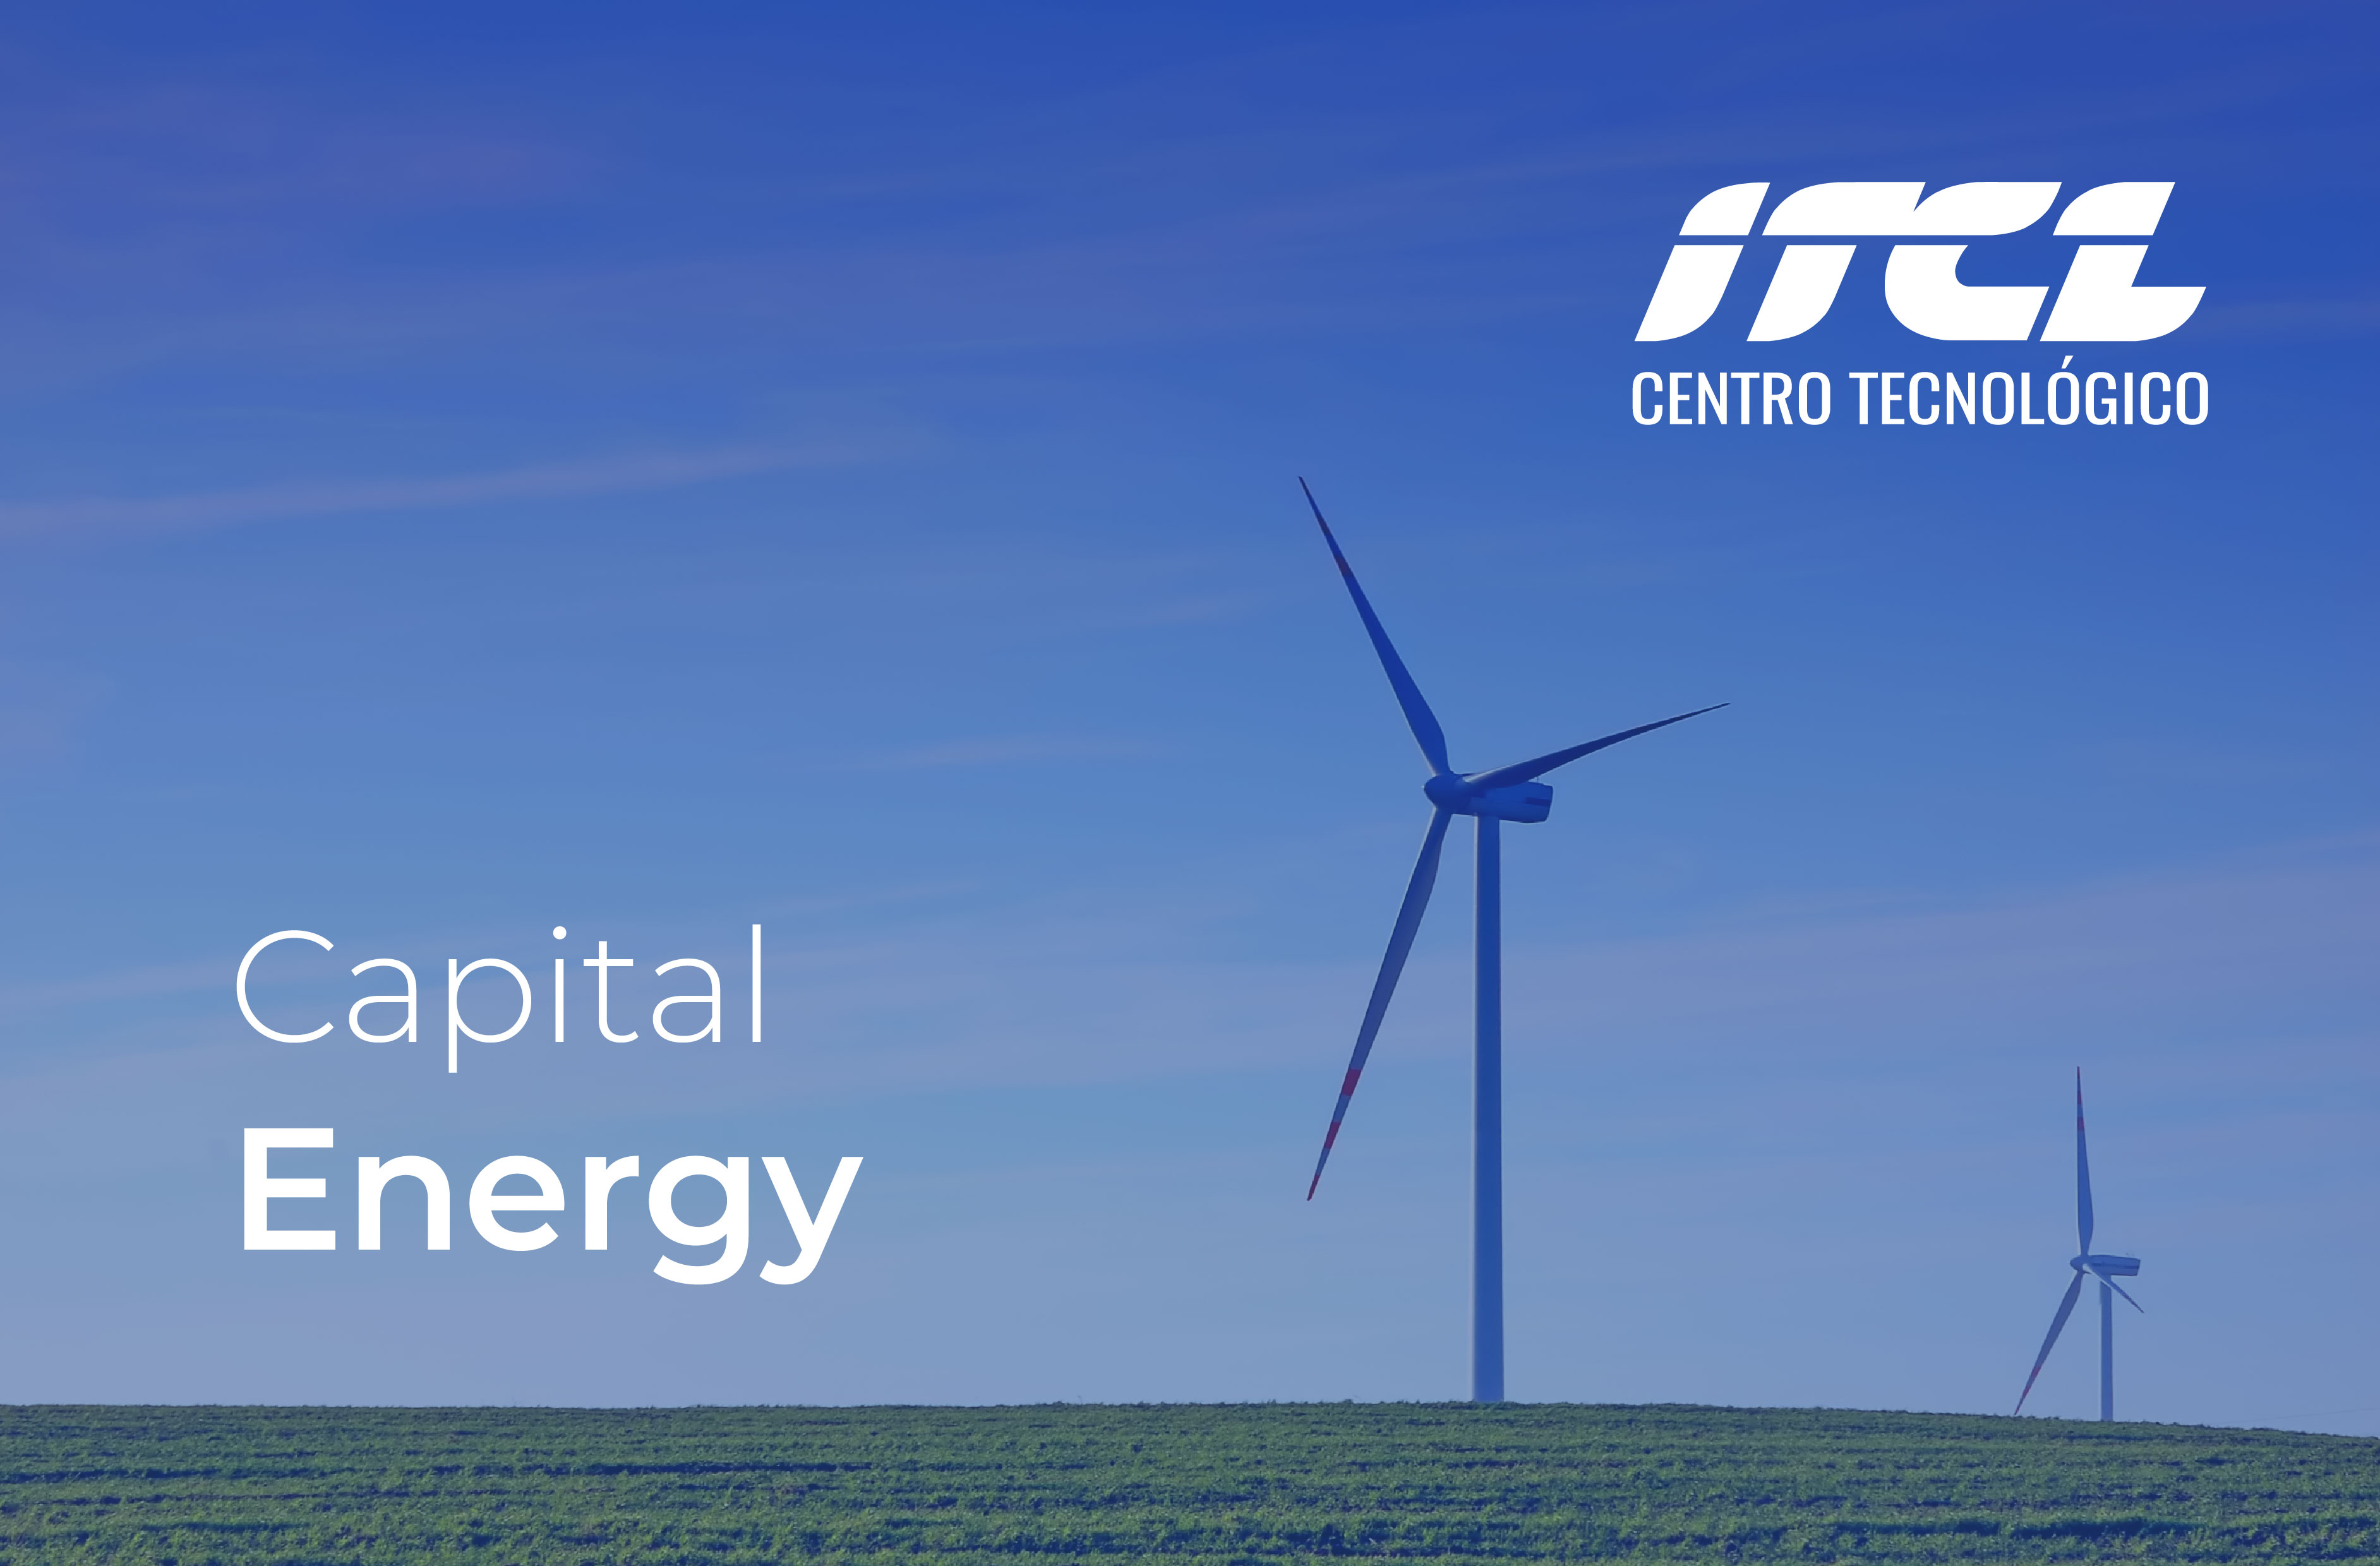 Descubre cómo el ITCL Centro Tecnológico, junto con Capital Energy, está liderando la transformación hacia un futuro energético sostenible mediante una revolucionaria visualización 3D de la gestión energética en las centrales energéticas renovables.